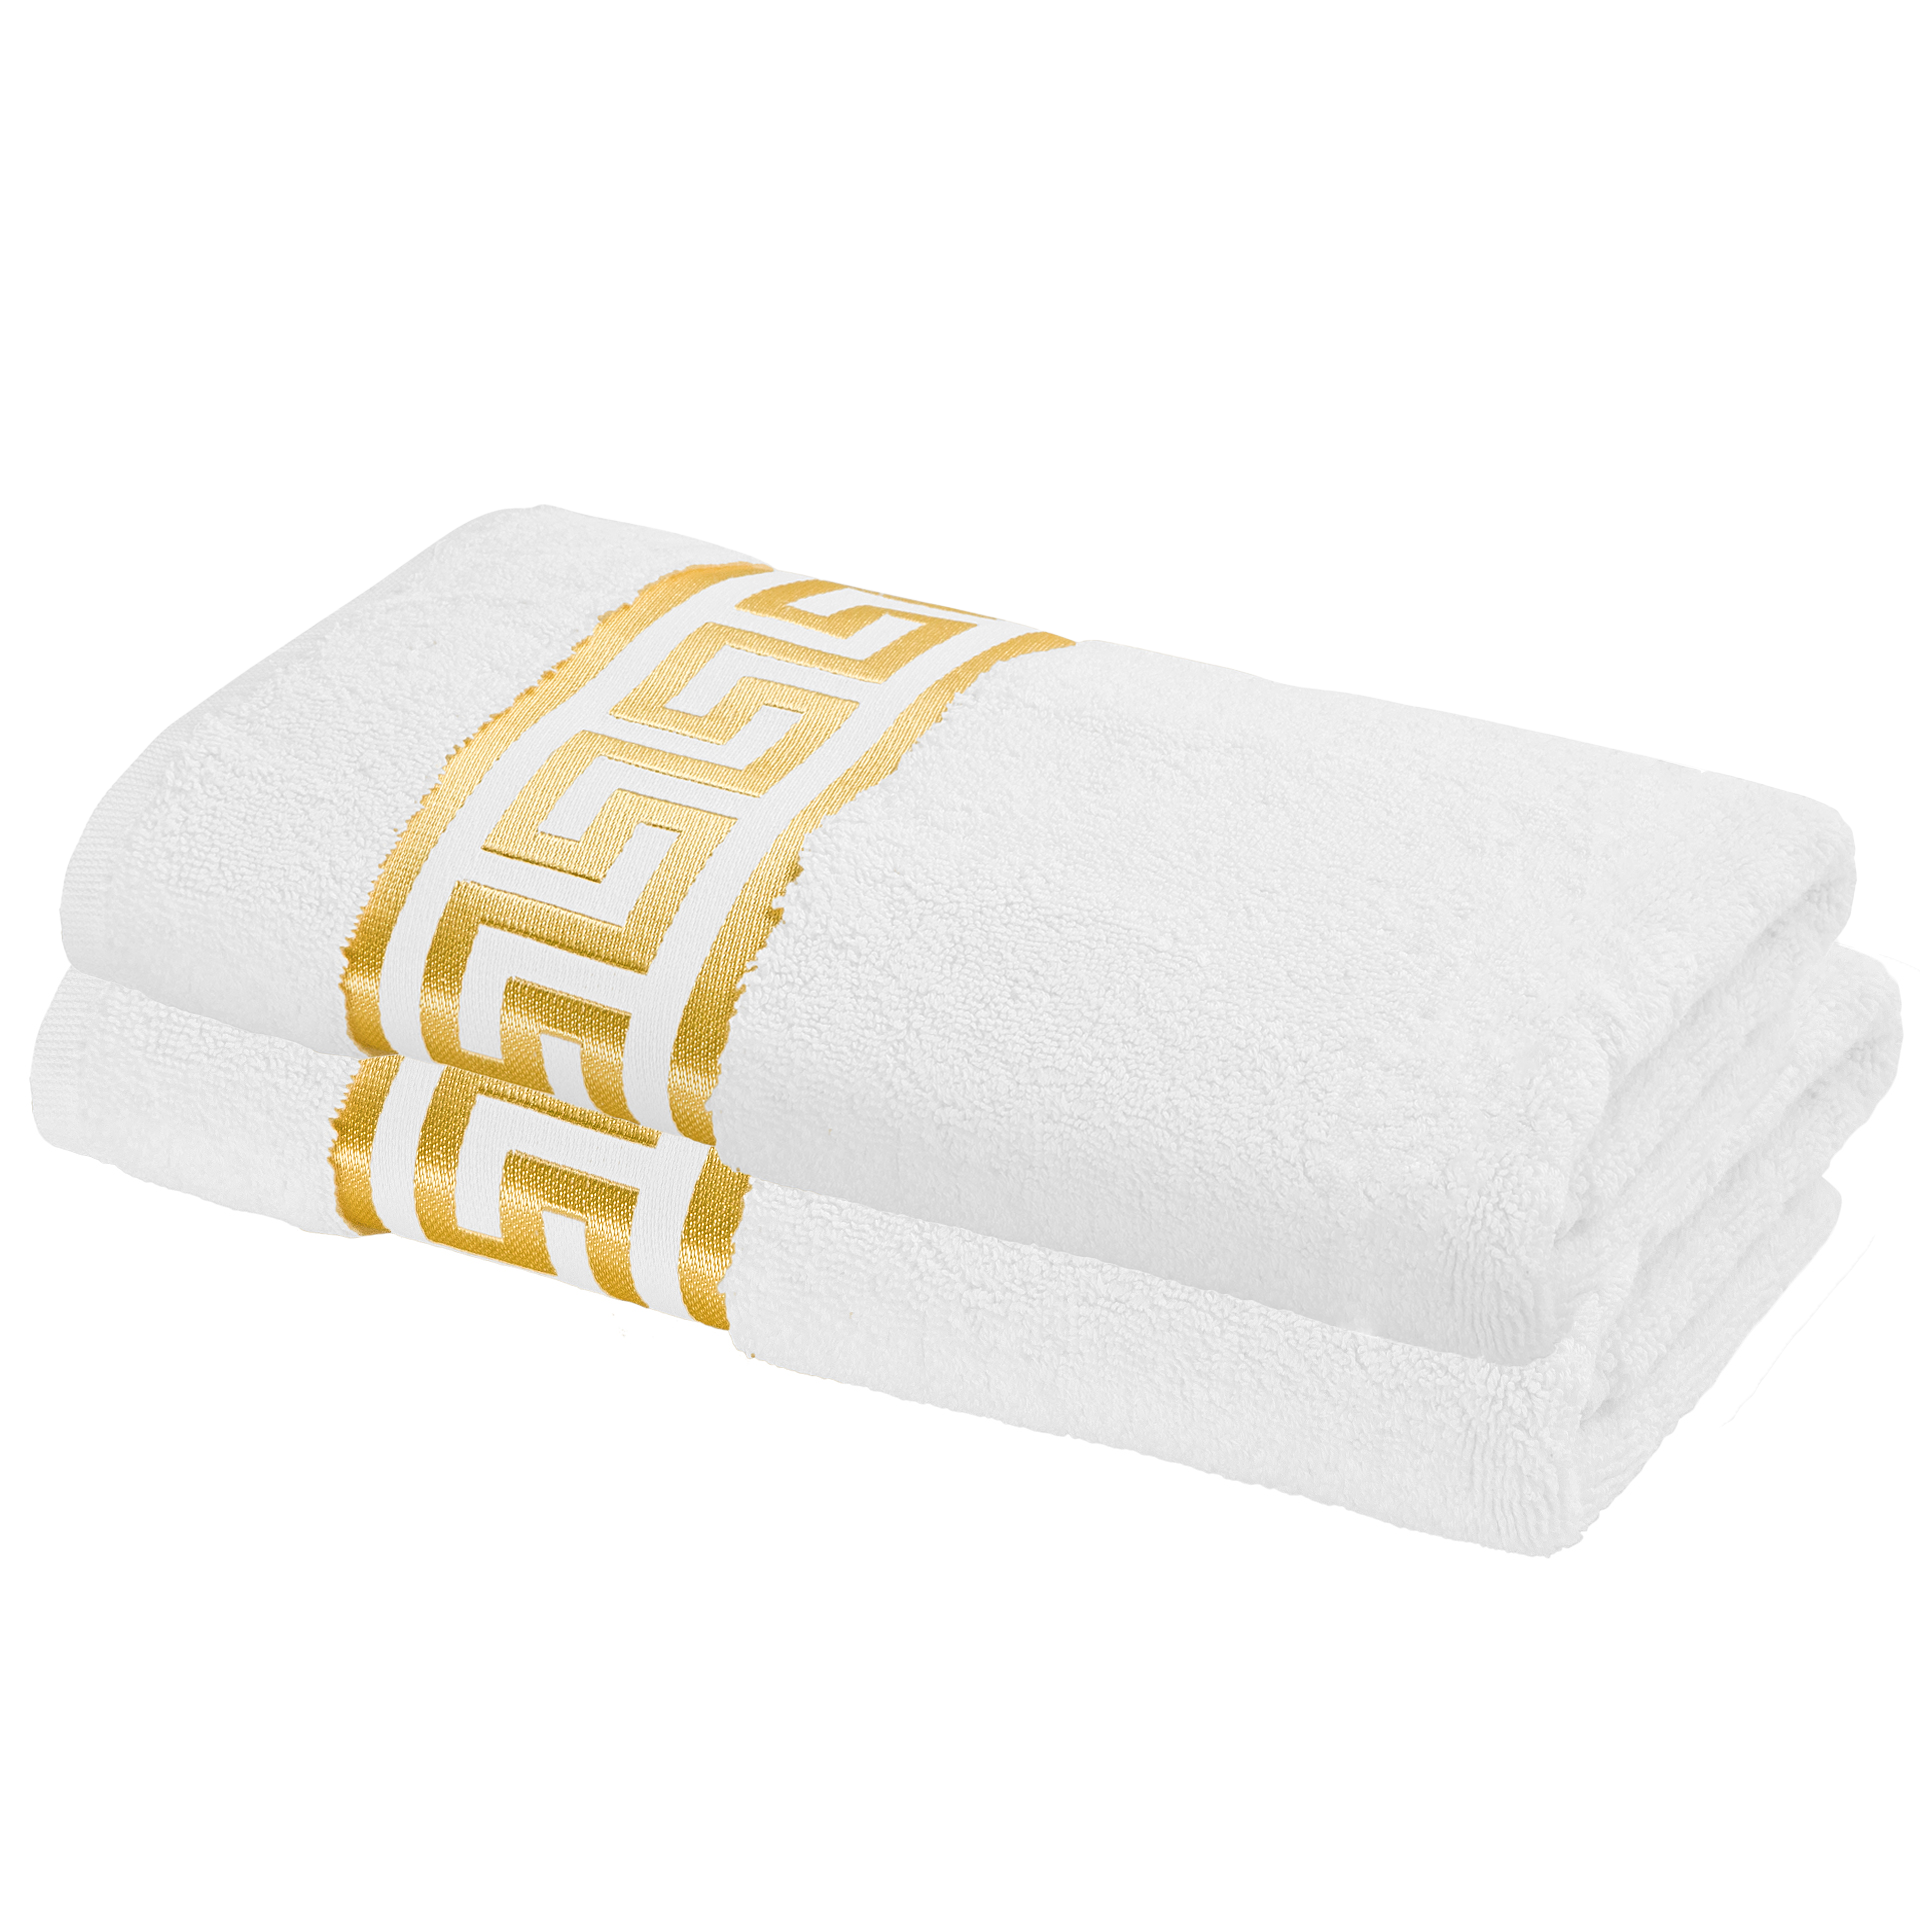 Luxus Mäander Handtücher in weiß gold - 100% Baumwolle - ÖkoTex zertifiziert